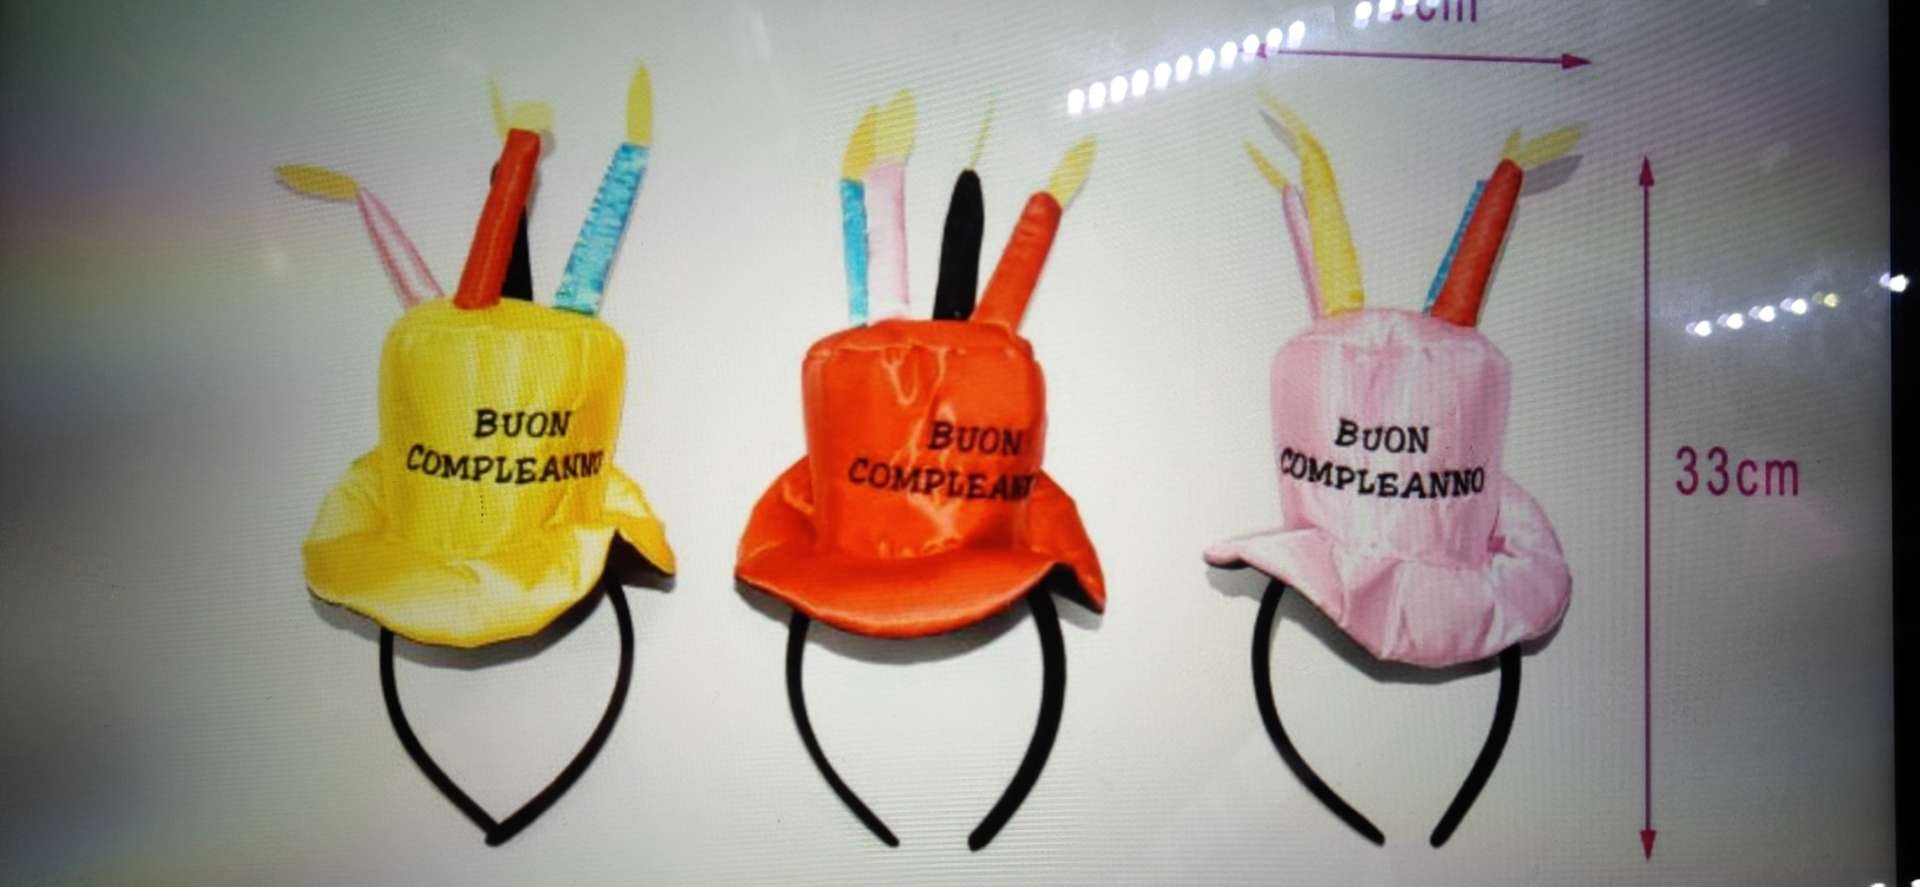 小蛋糕帽十头扣   绣西语  意大利语   英语    生日快乐产品图